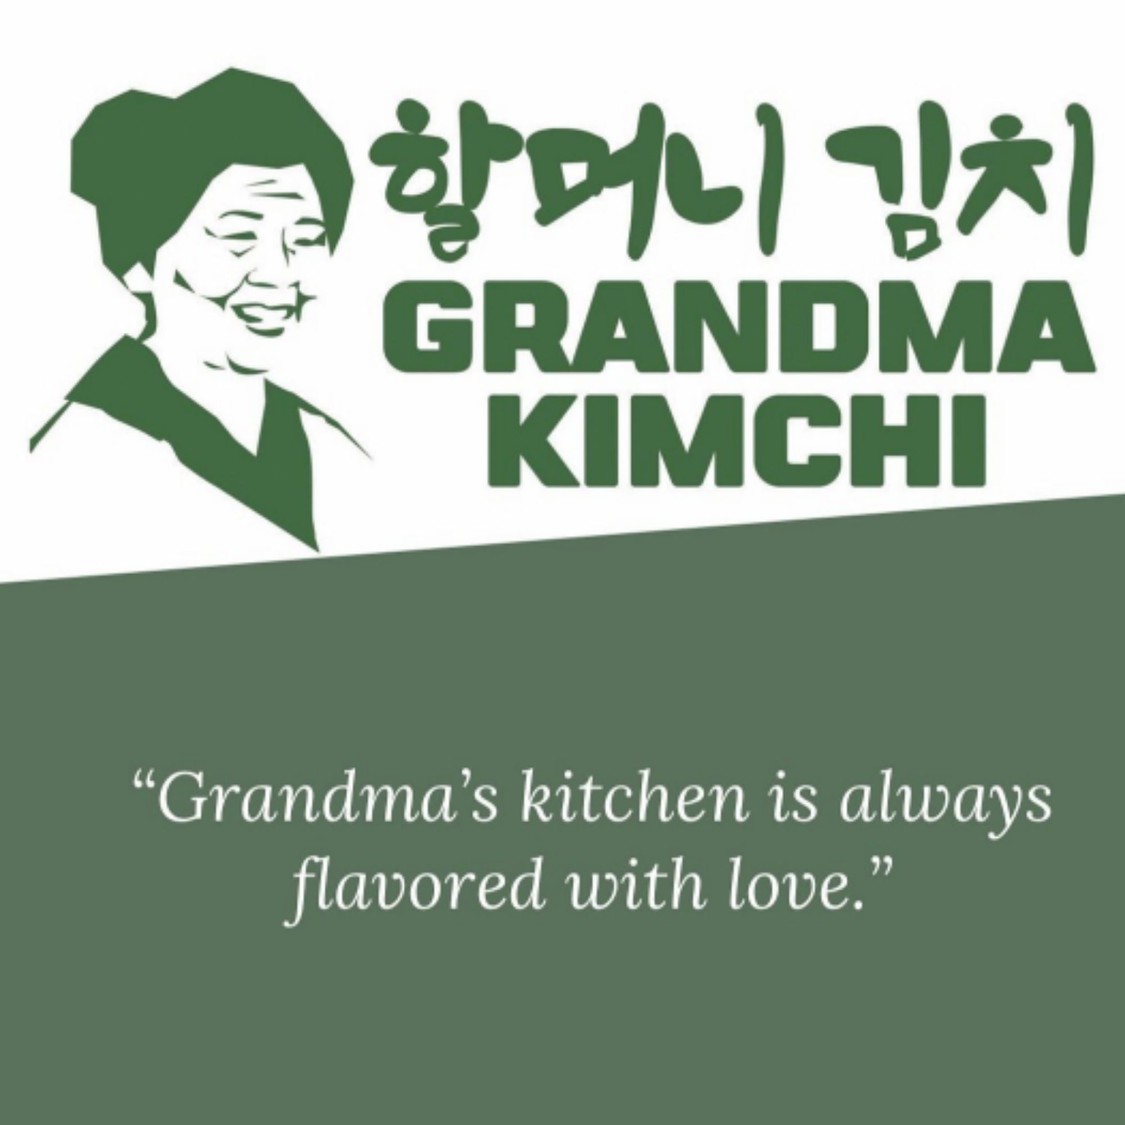 grandma's kimchi essay summary